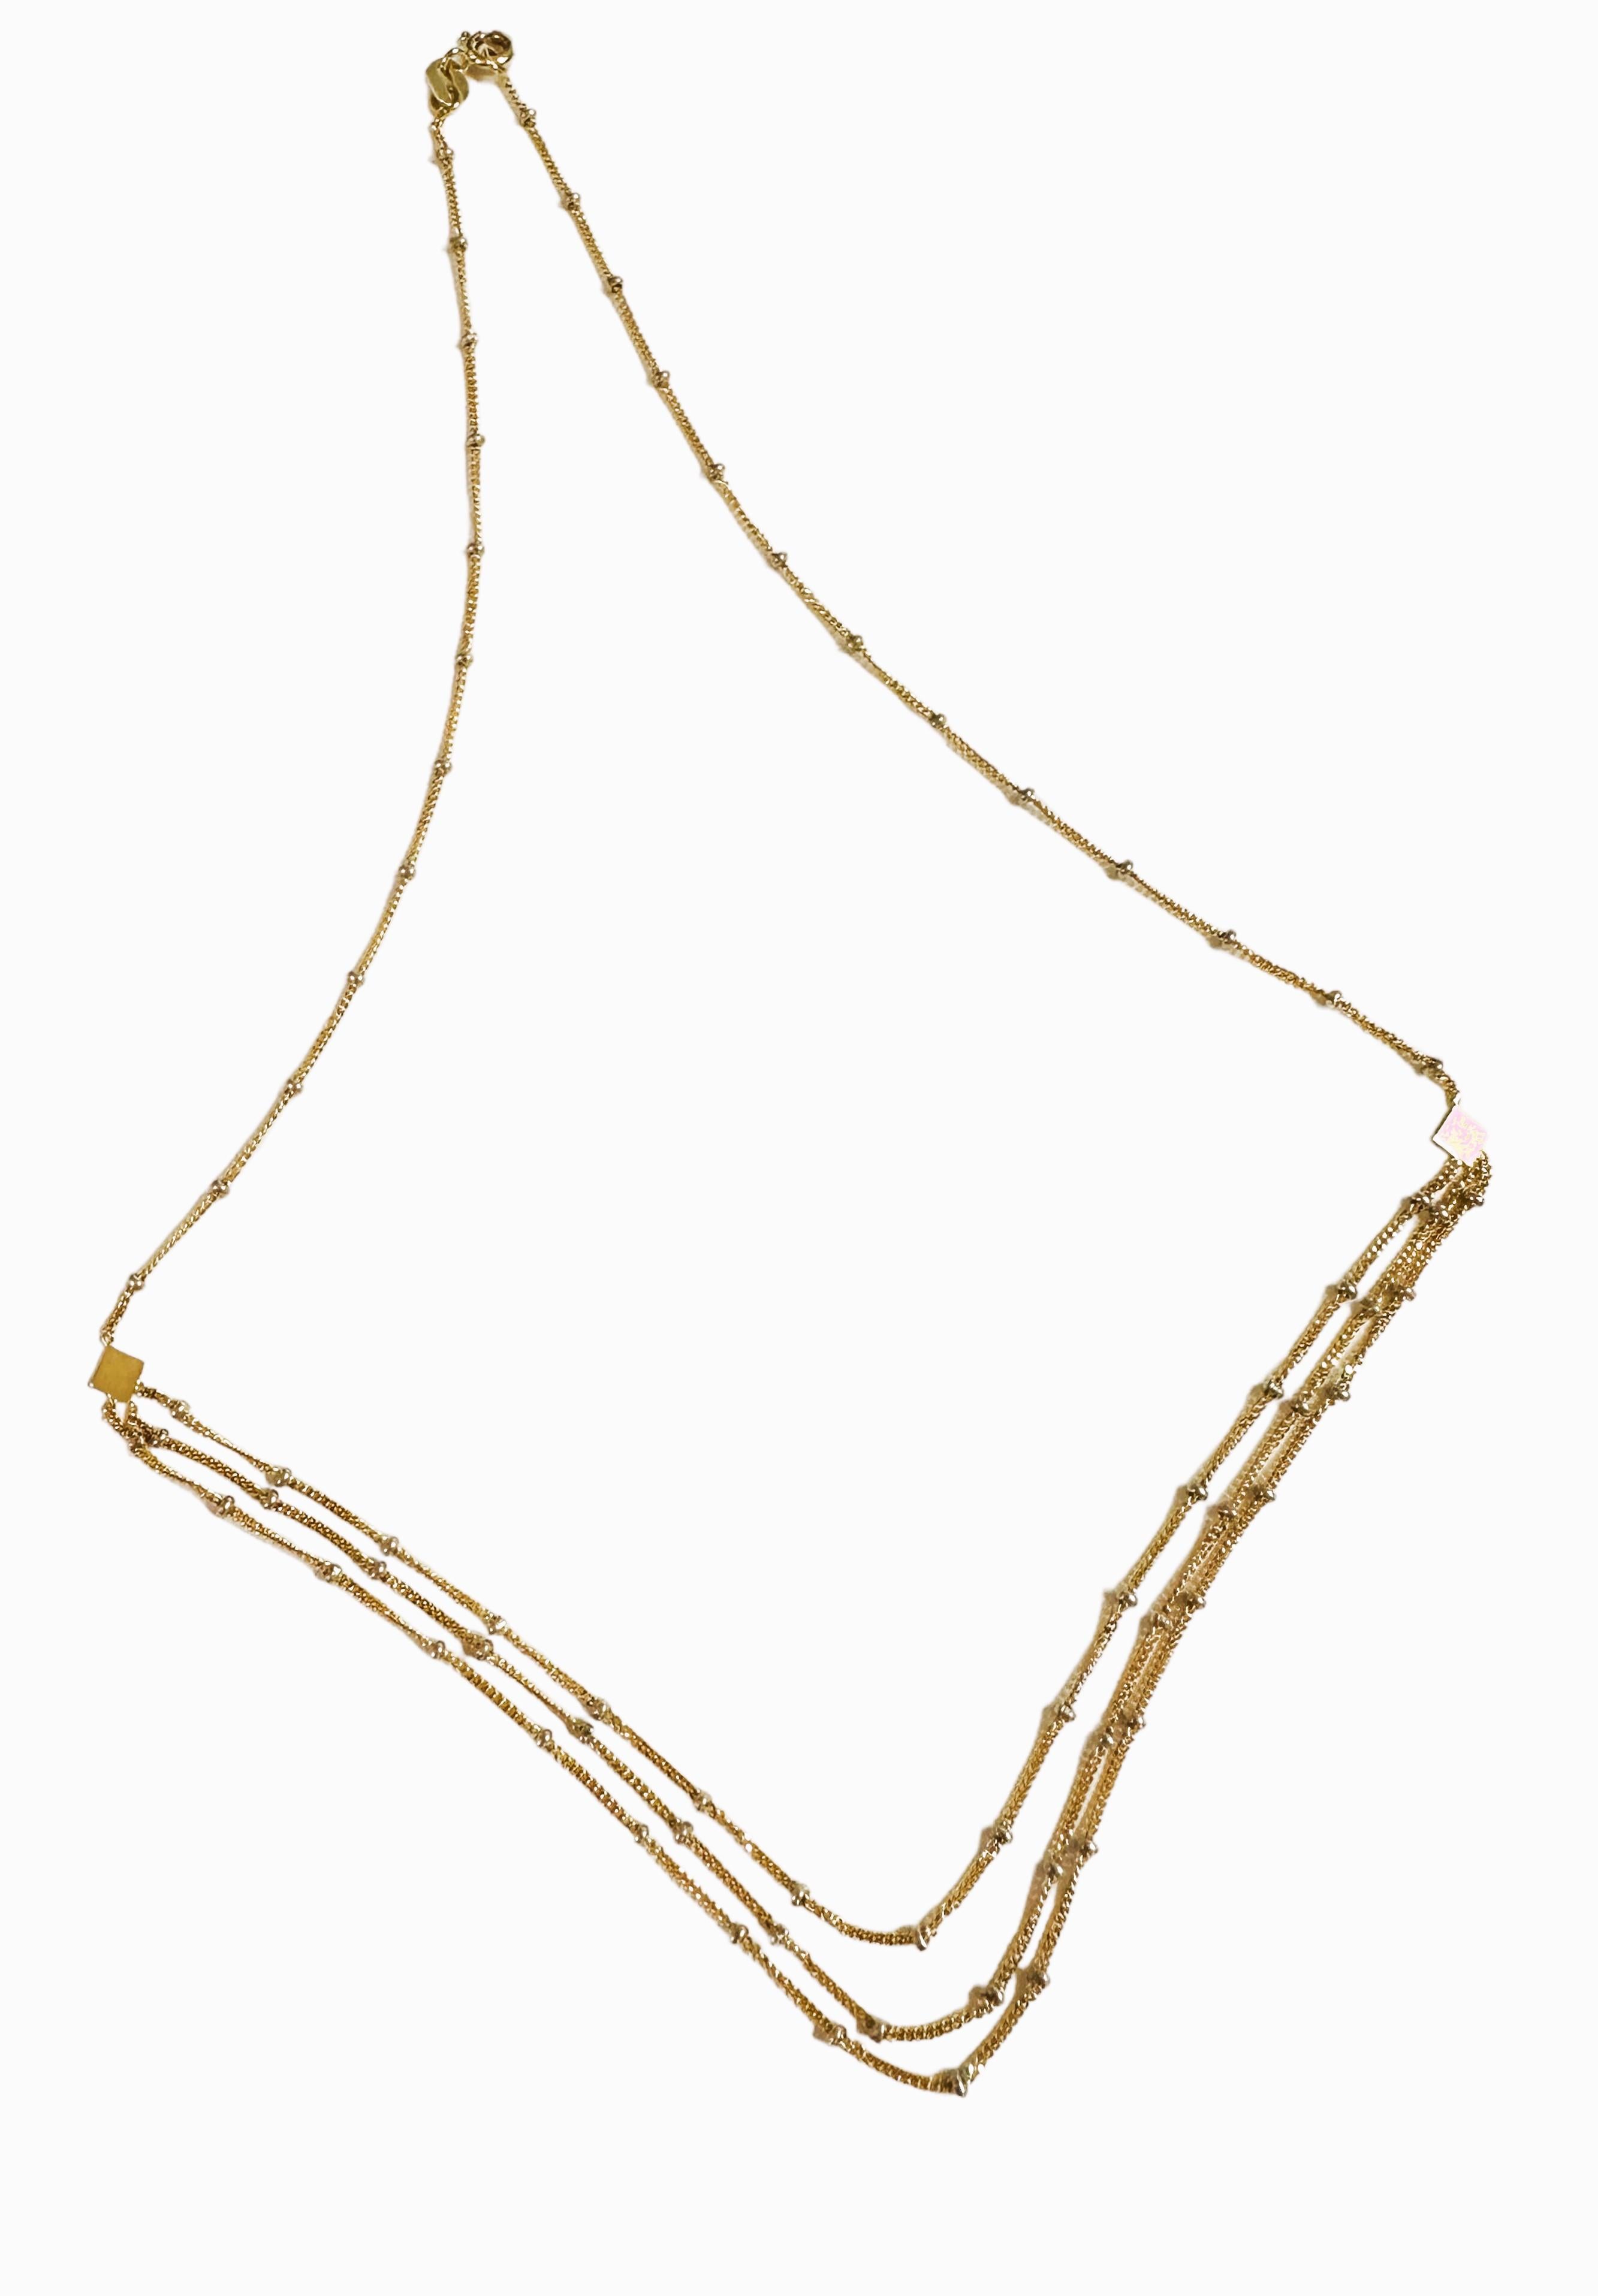 18 Karat Gelbgold Italienische 3-reihige Halskette mit Zinnperlen - signiert - 17